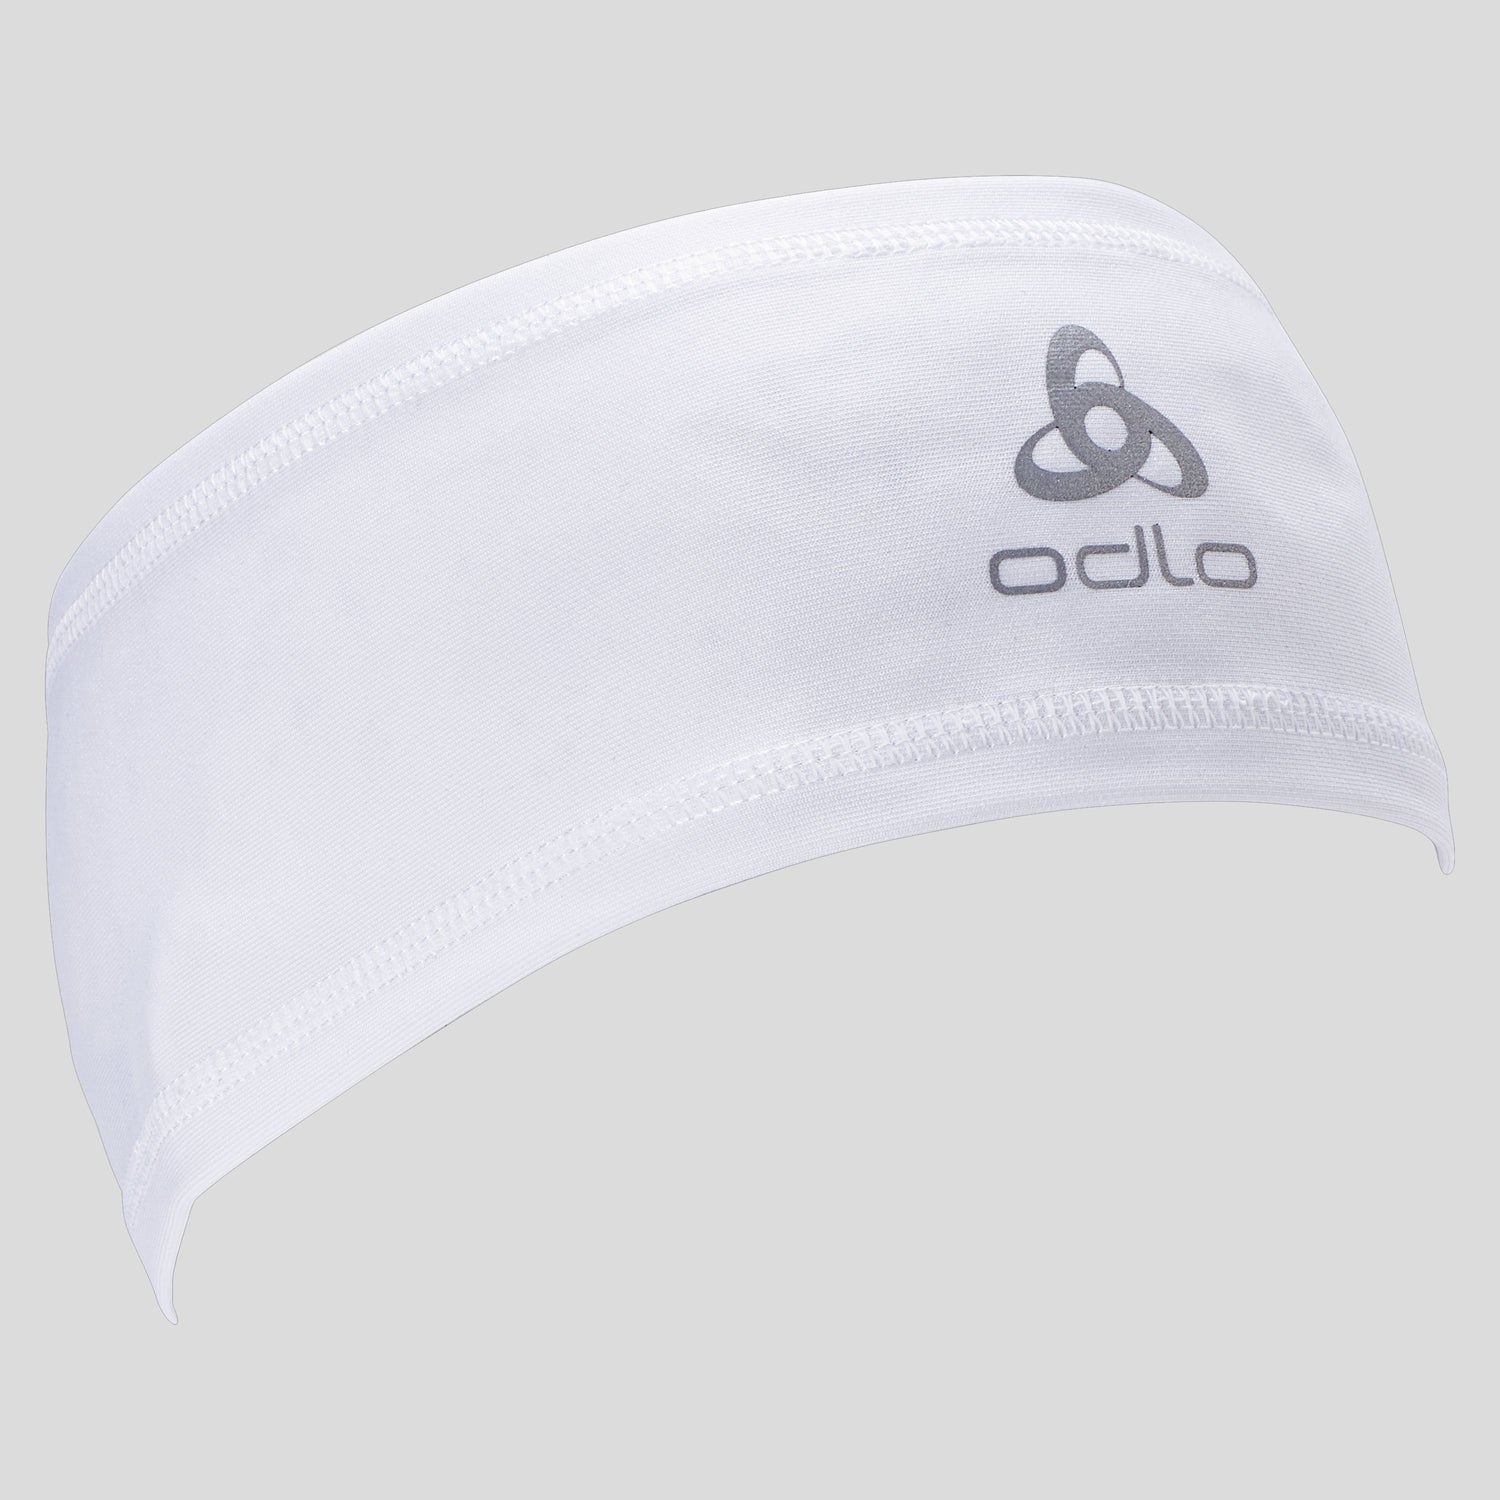 Odlo Polyknit Eco Light Headband